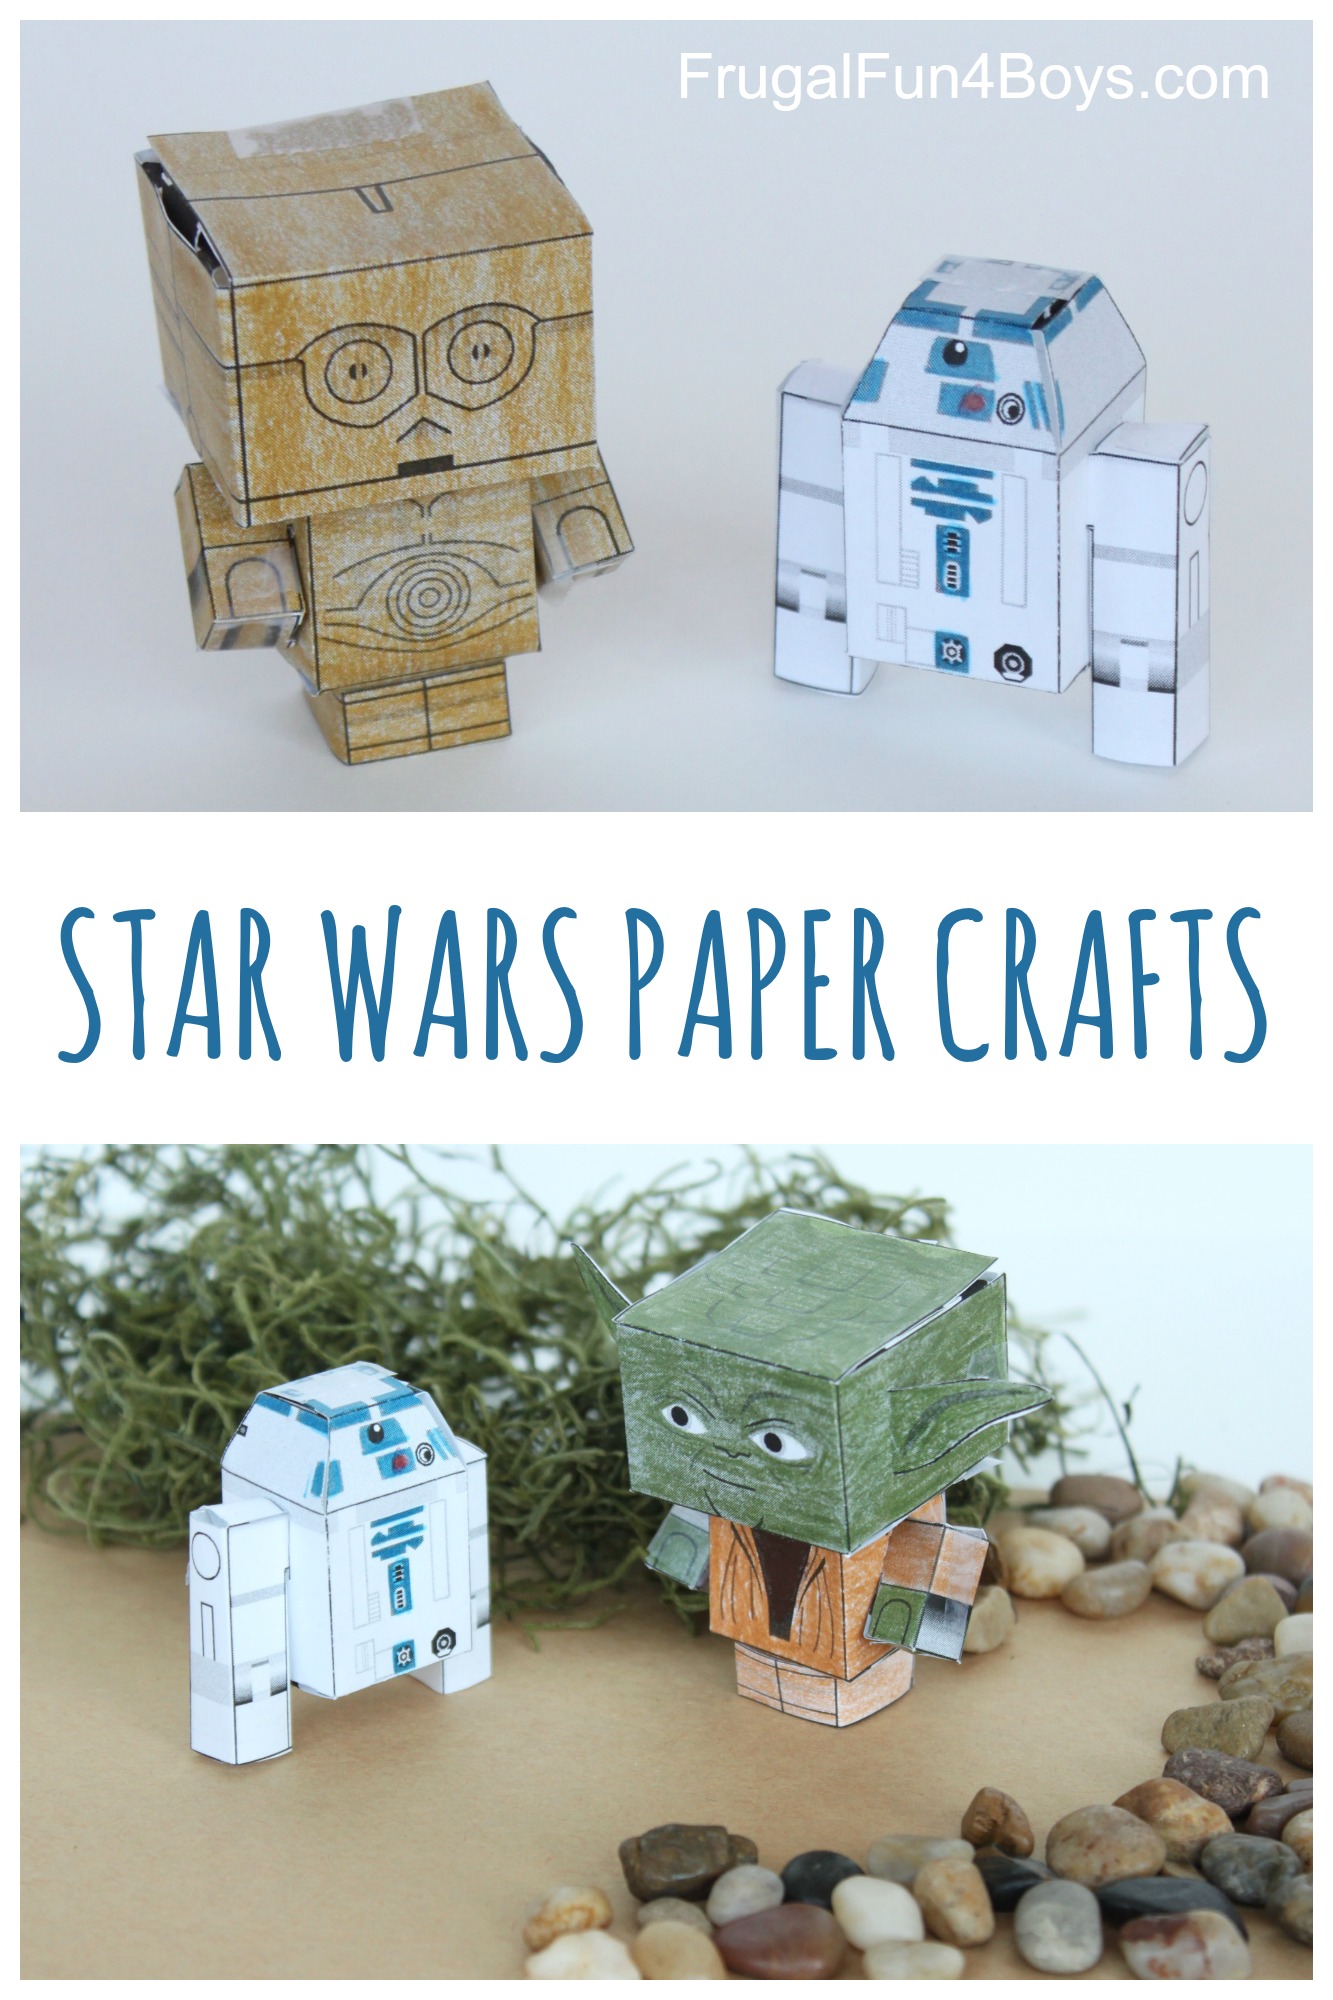 Star Wars paper crafts